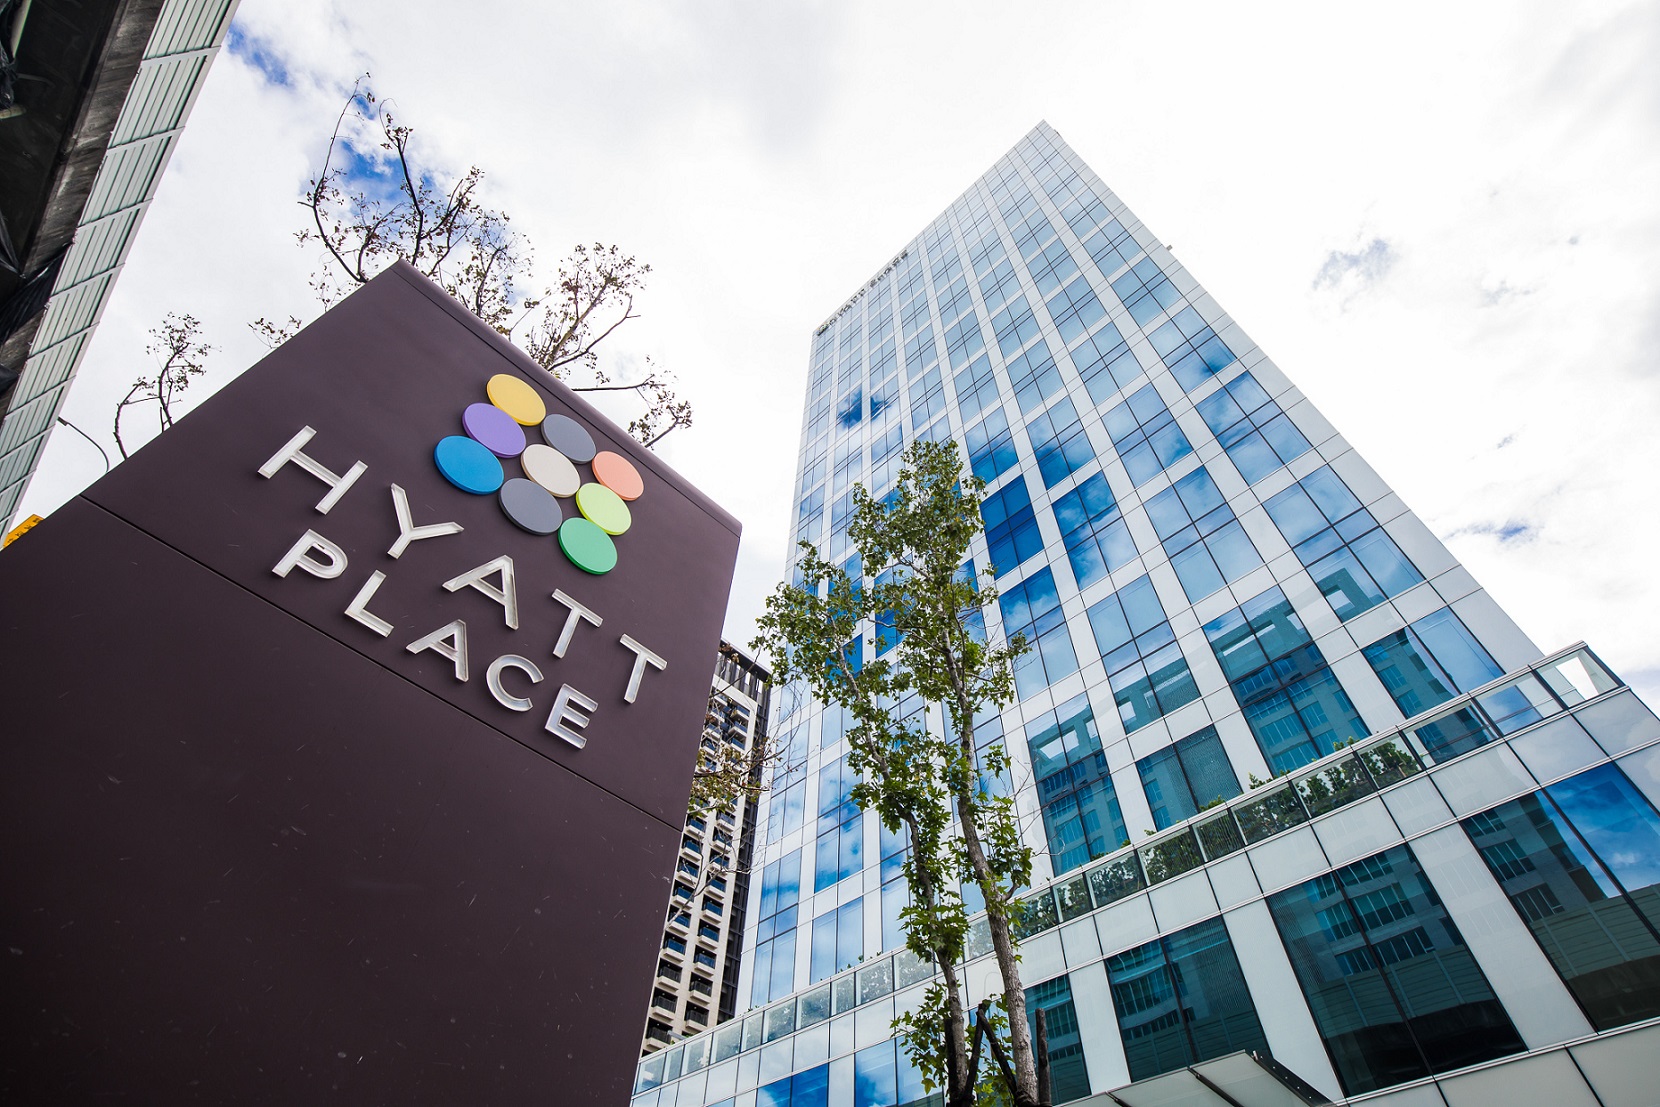 「Hyatt Place凱悅嘉軒」國際品牌飯店終落腳新莊，新莊凱悅嘉軒酒店地上21層、地下4層的華麗建物，提供280間客房、文創及展演空間